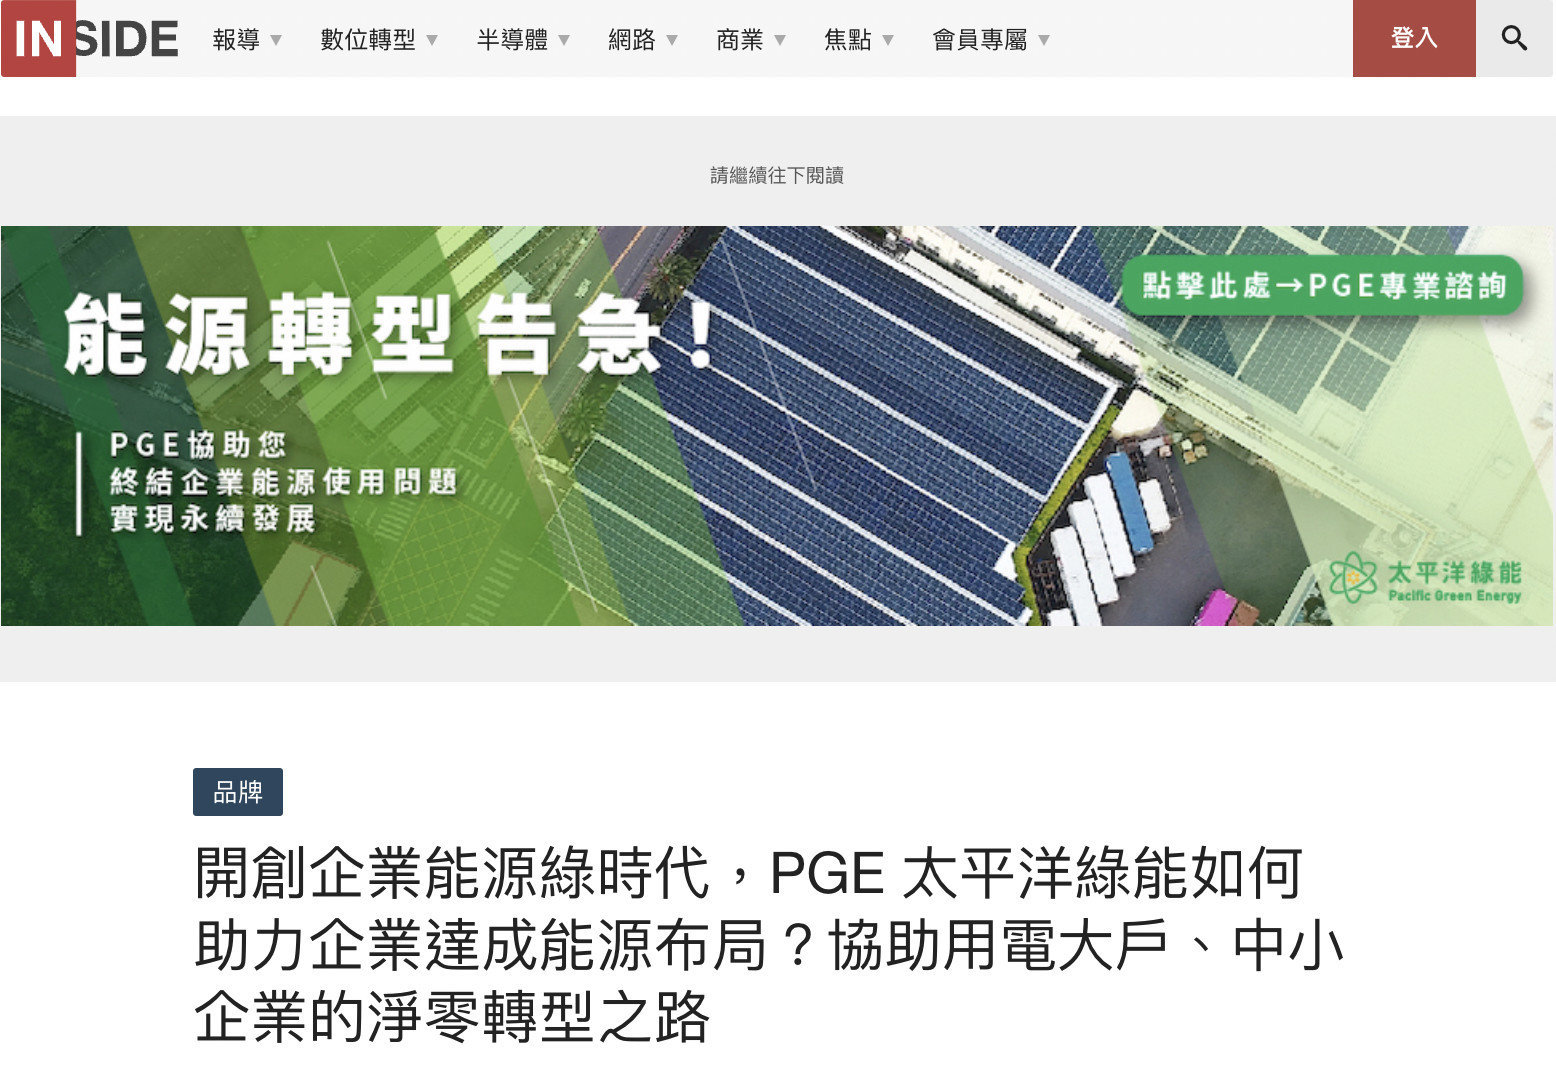 企業ESG、ESG企業、ESG、太陽能、能源佈局、台灣能源、能源規劃、台灣綠能、台灣再生能源、節能減碳、節能法規